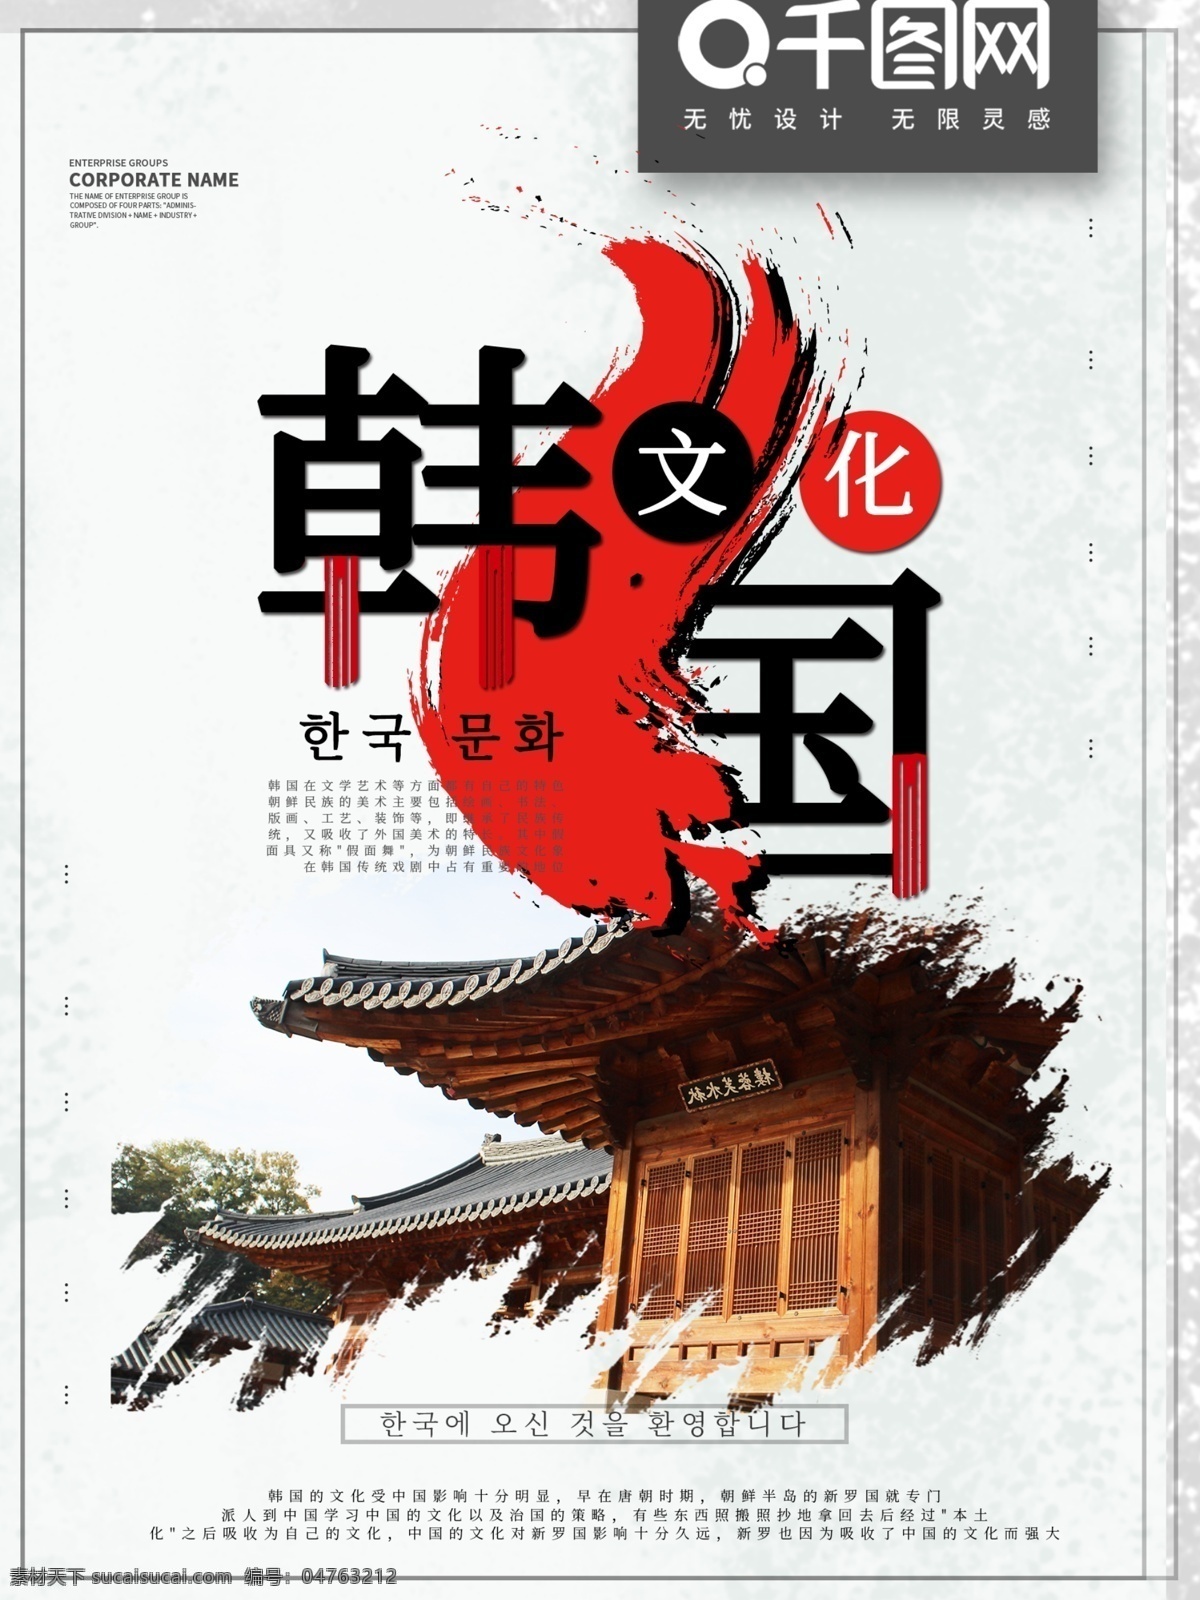 简约 韩国 文化 宣传 商业 海报 韩国文化 文化宣传 文化建设 文化交流使用 中外文化交流 旅游团使用 旅游公司使用